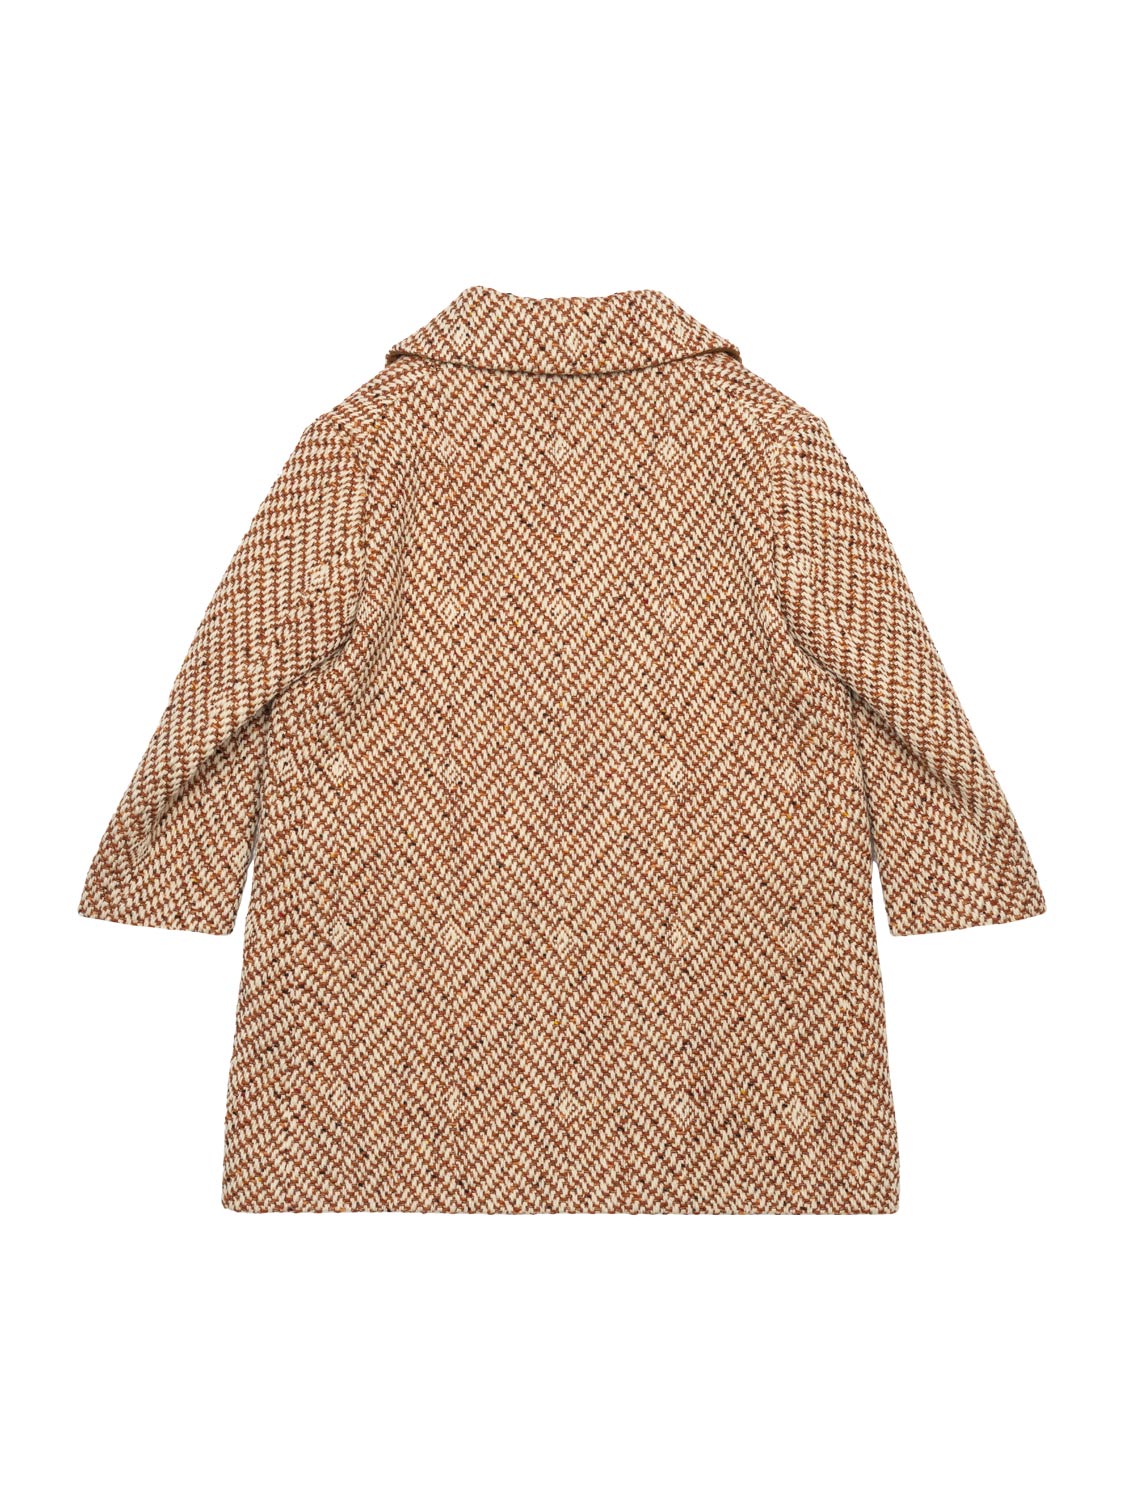 Mantel aus Wolle mit Square G - Beige/Elfenbein